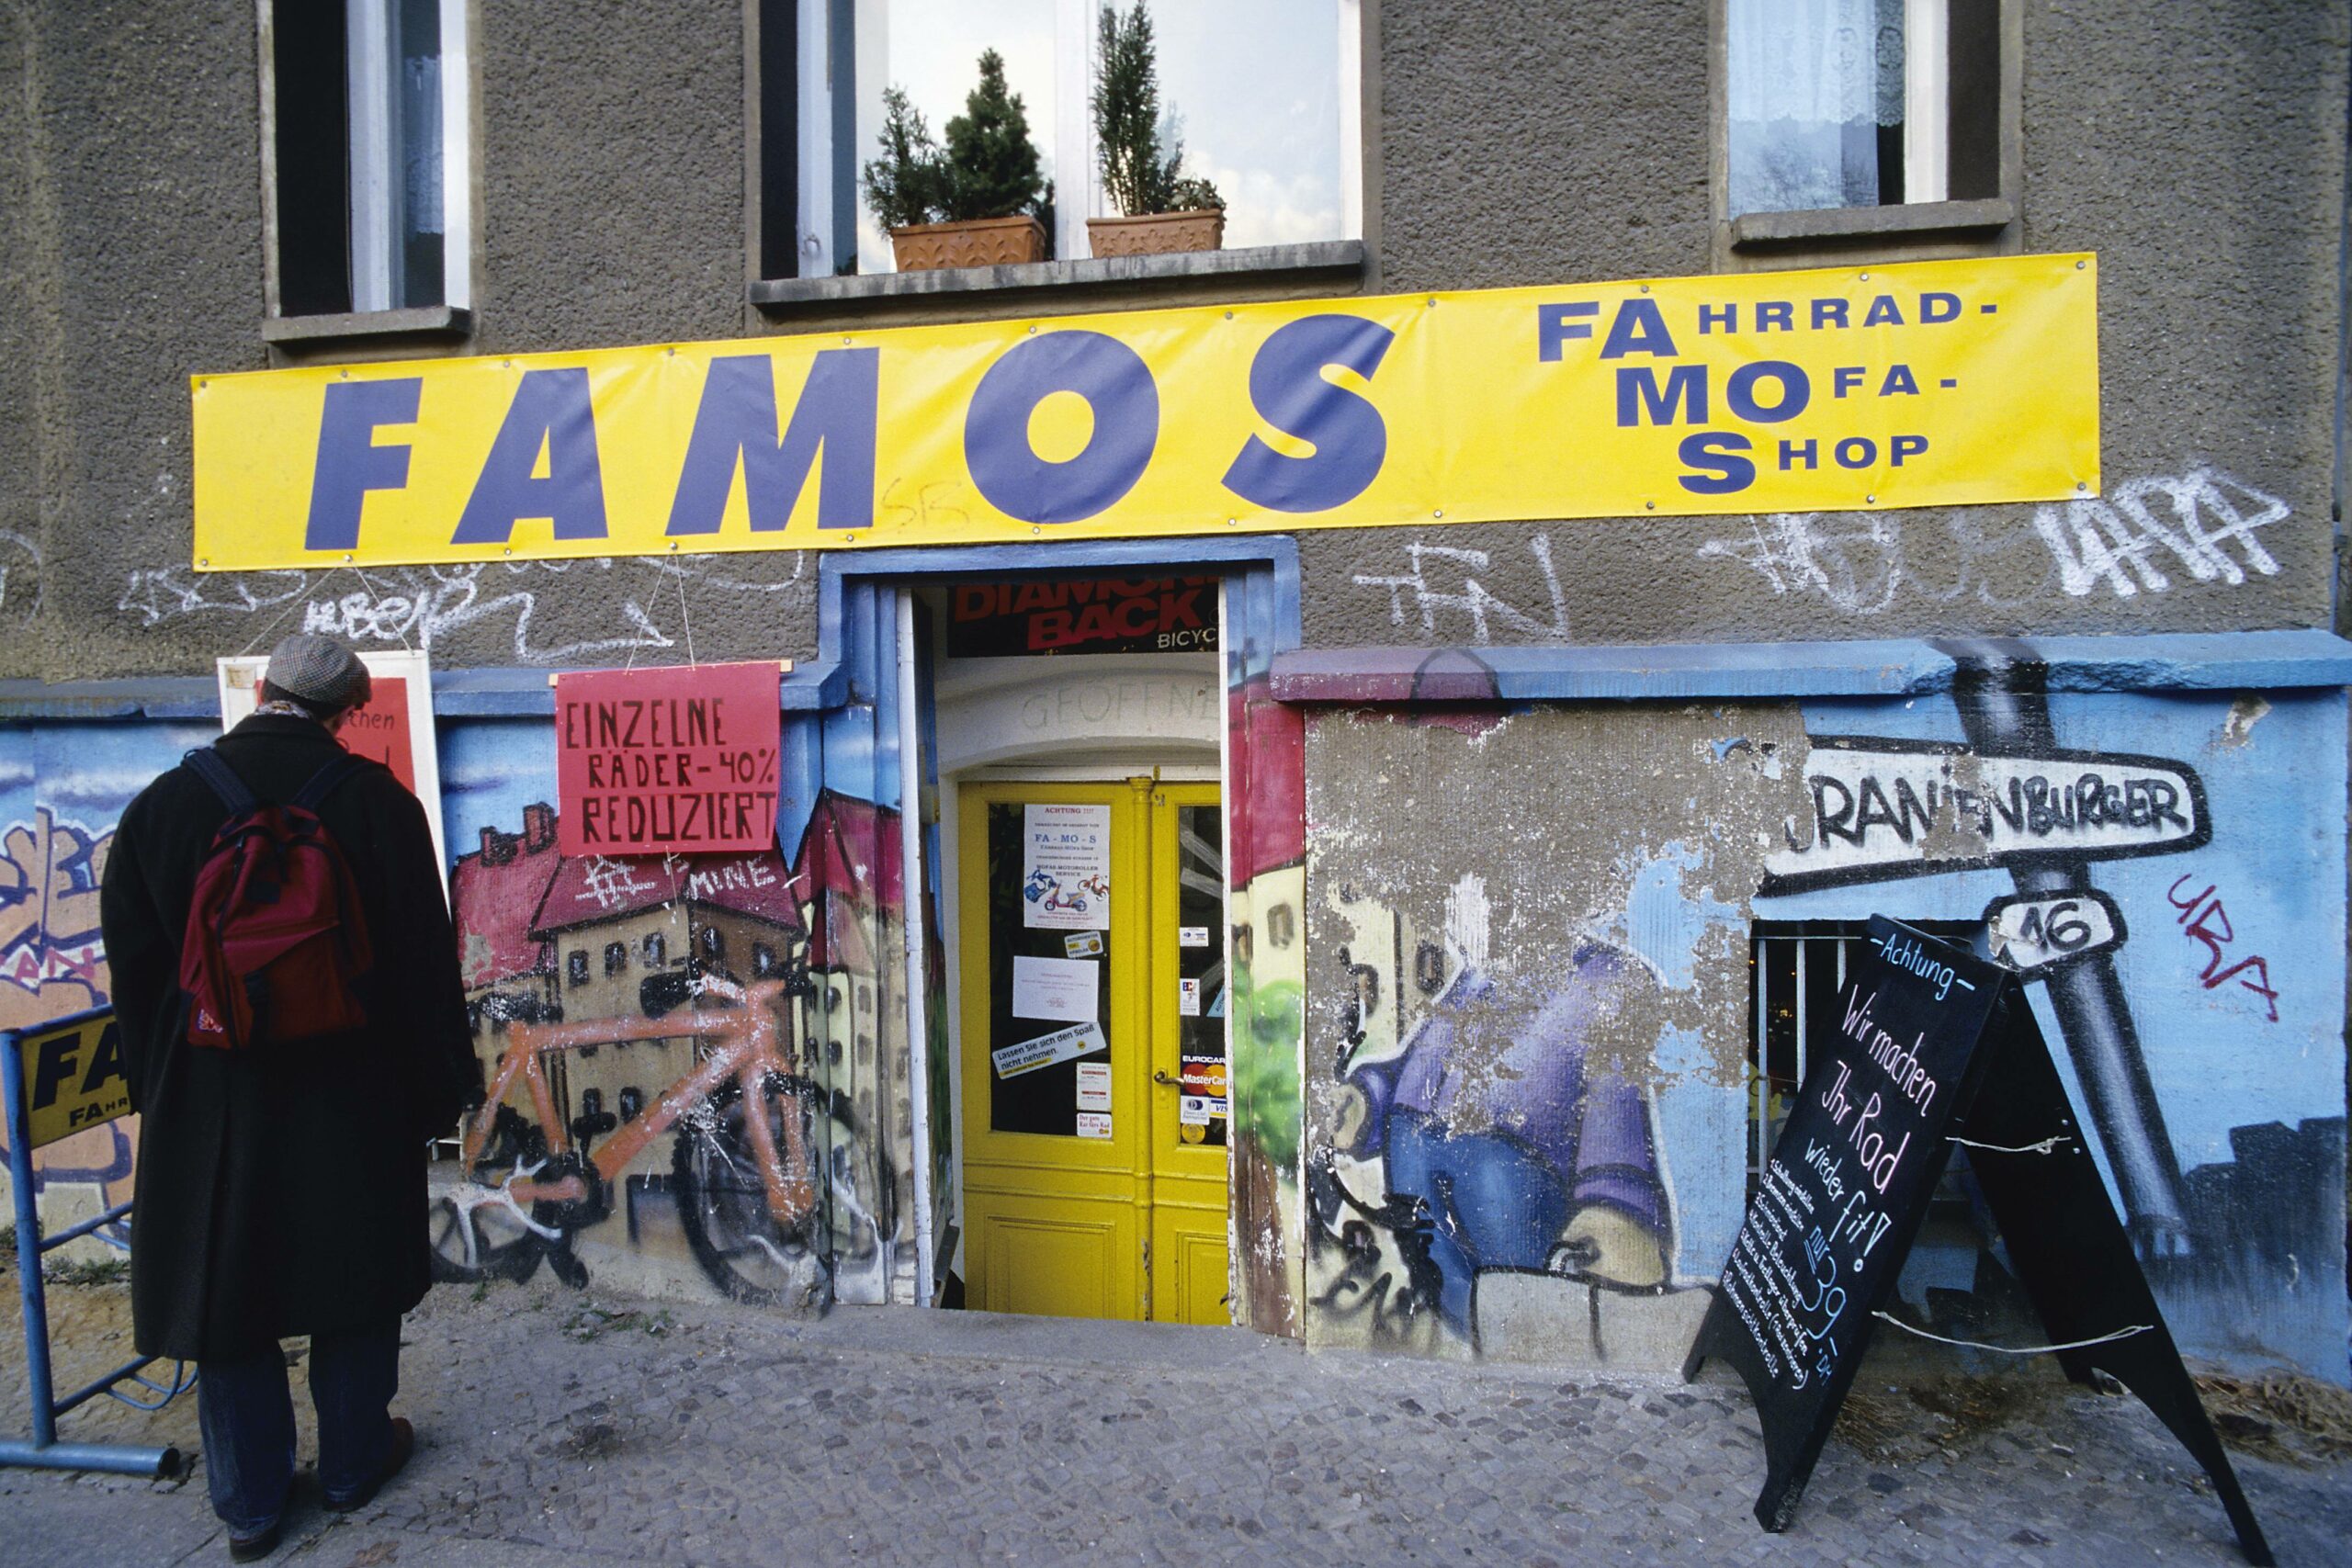 Fahrradhändler "Famos" in der Oranienburger Straße in Mitte. Foto: Imago/Imagebroker 